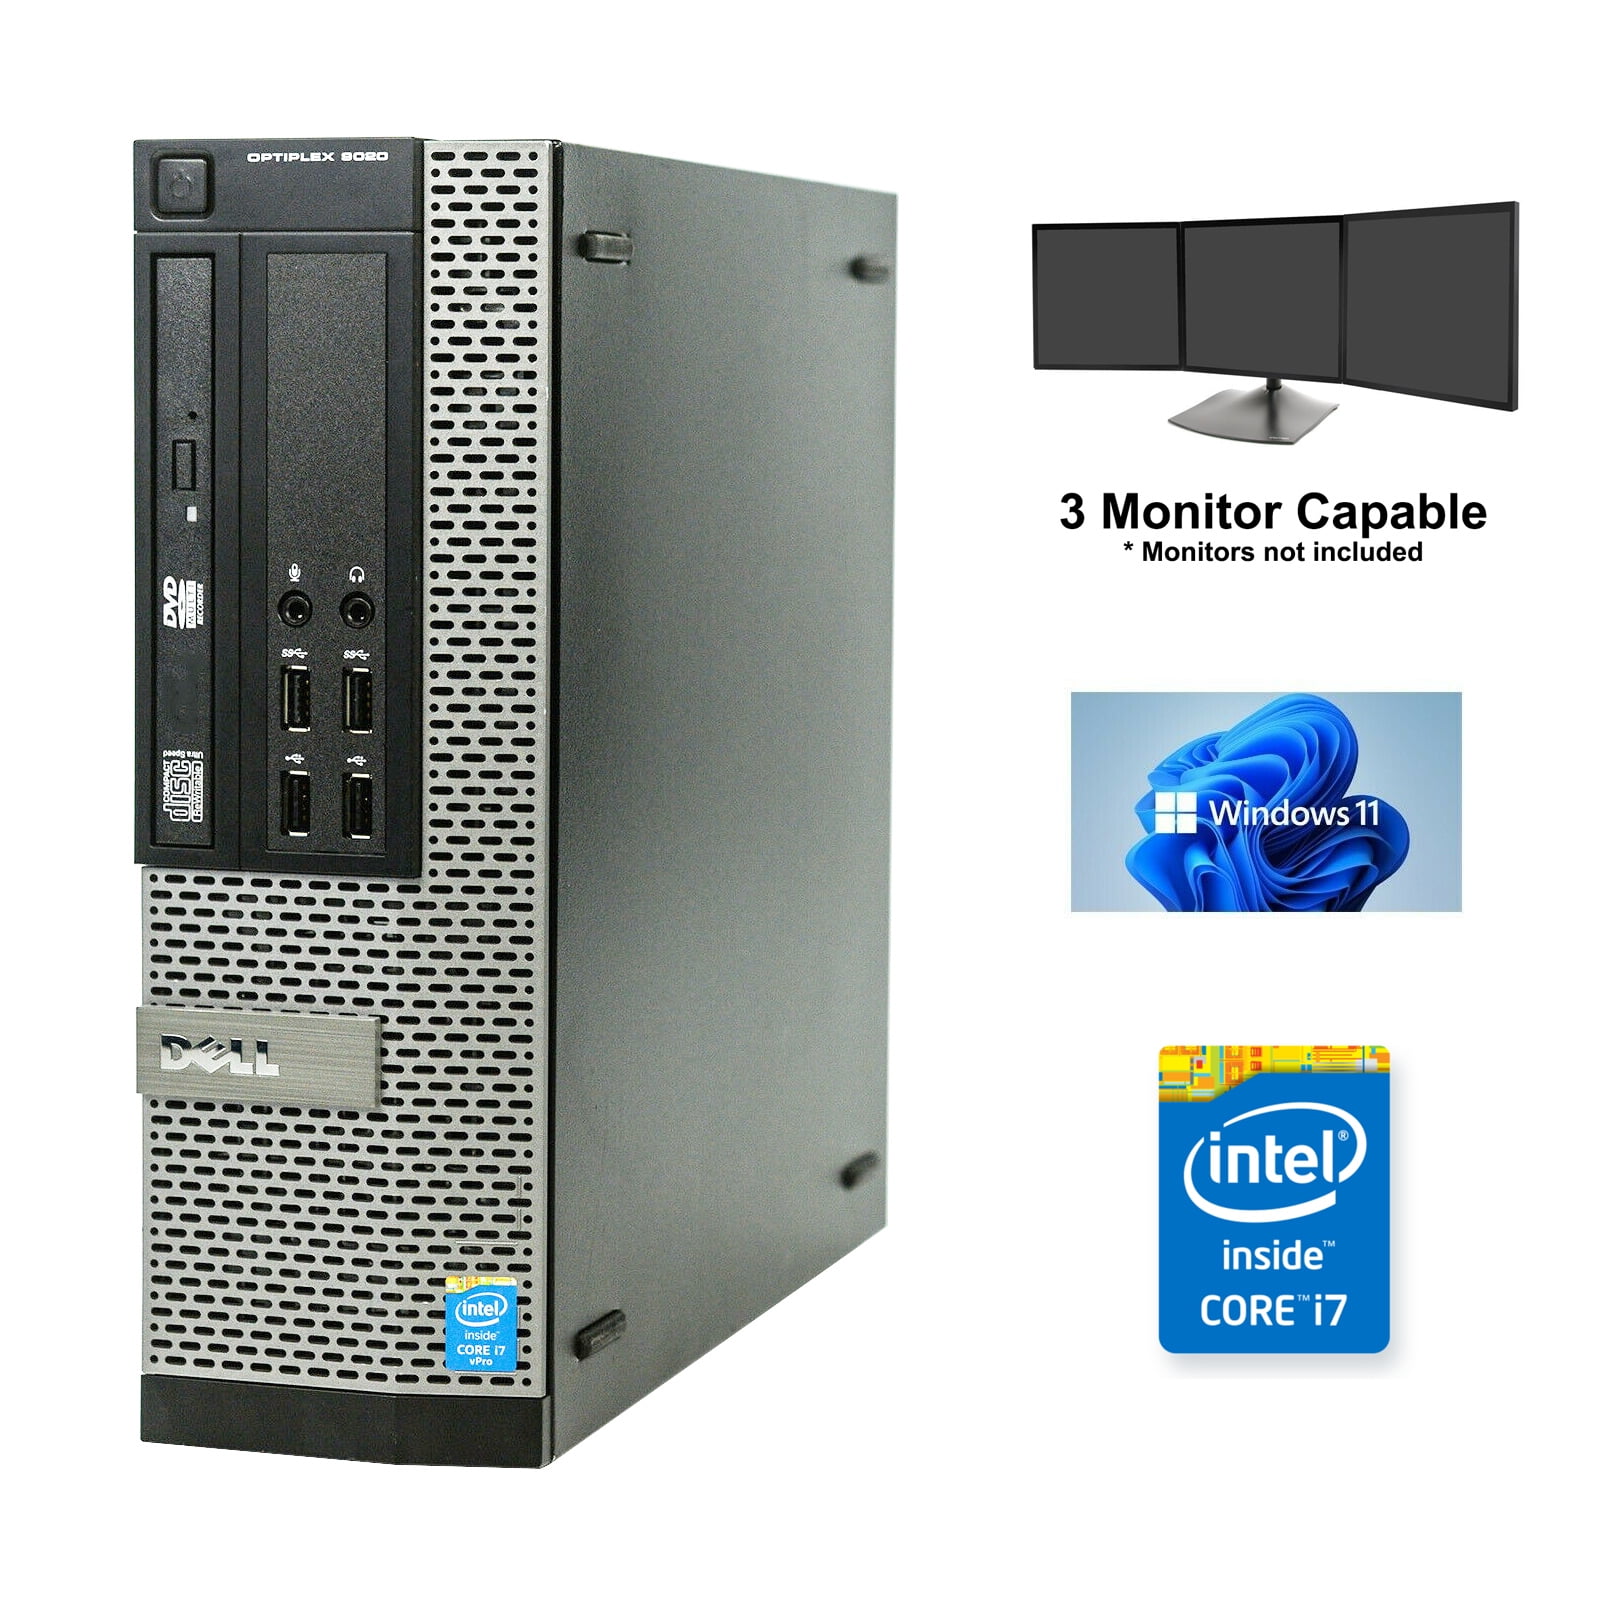 Dell - PC Dell OptiPlex 7010 SFF Intel Core i7-2600 RAM 16Go SSD 480Go  Windows 10 Wifi - PC Fixe - Rue du Commerce